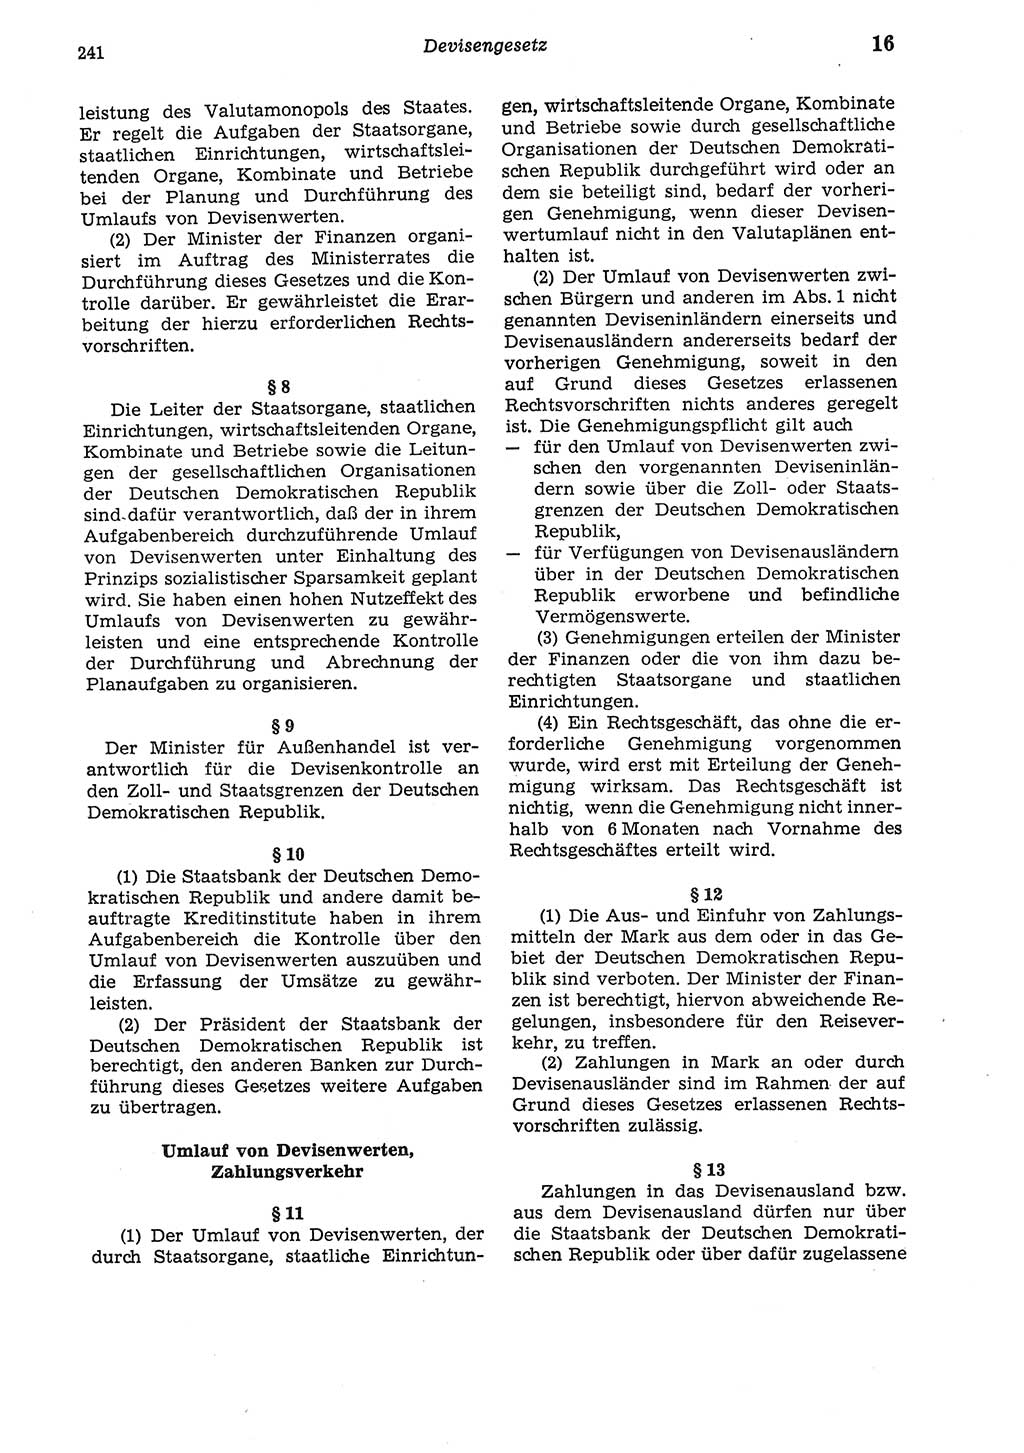 Strafgesetzbuch (StGB) der Deutschen Demokratischen Republik (DDR) und angrenzende Gesetze und Bestimmungen 1975, Seite 241 (StGB DDR Ges. Best. 1975, S. 241)